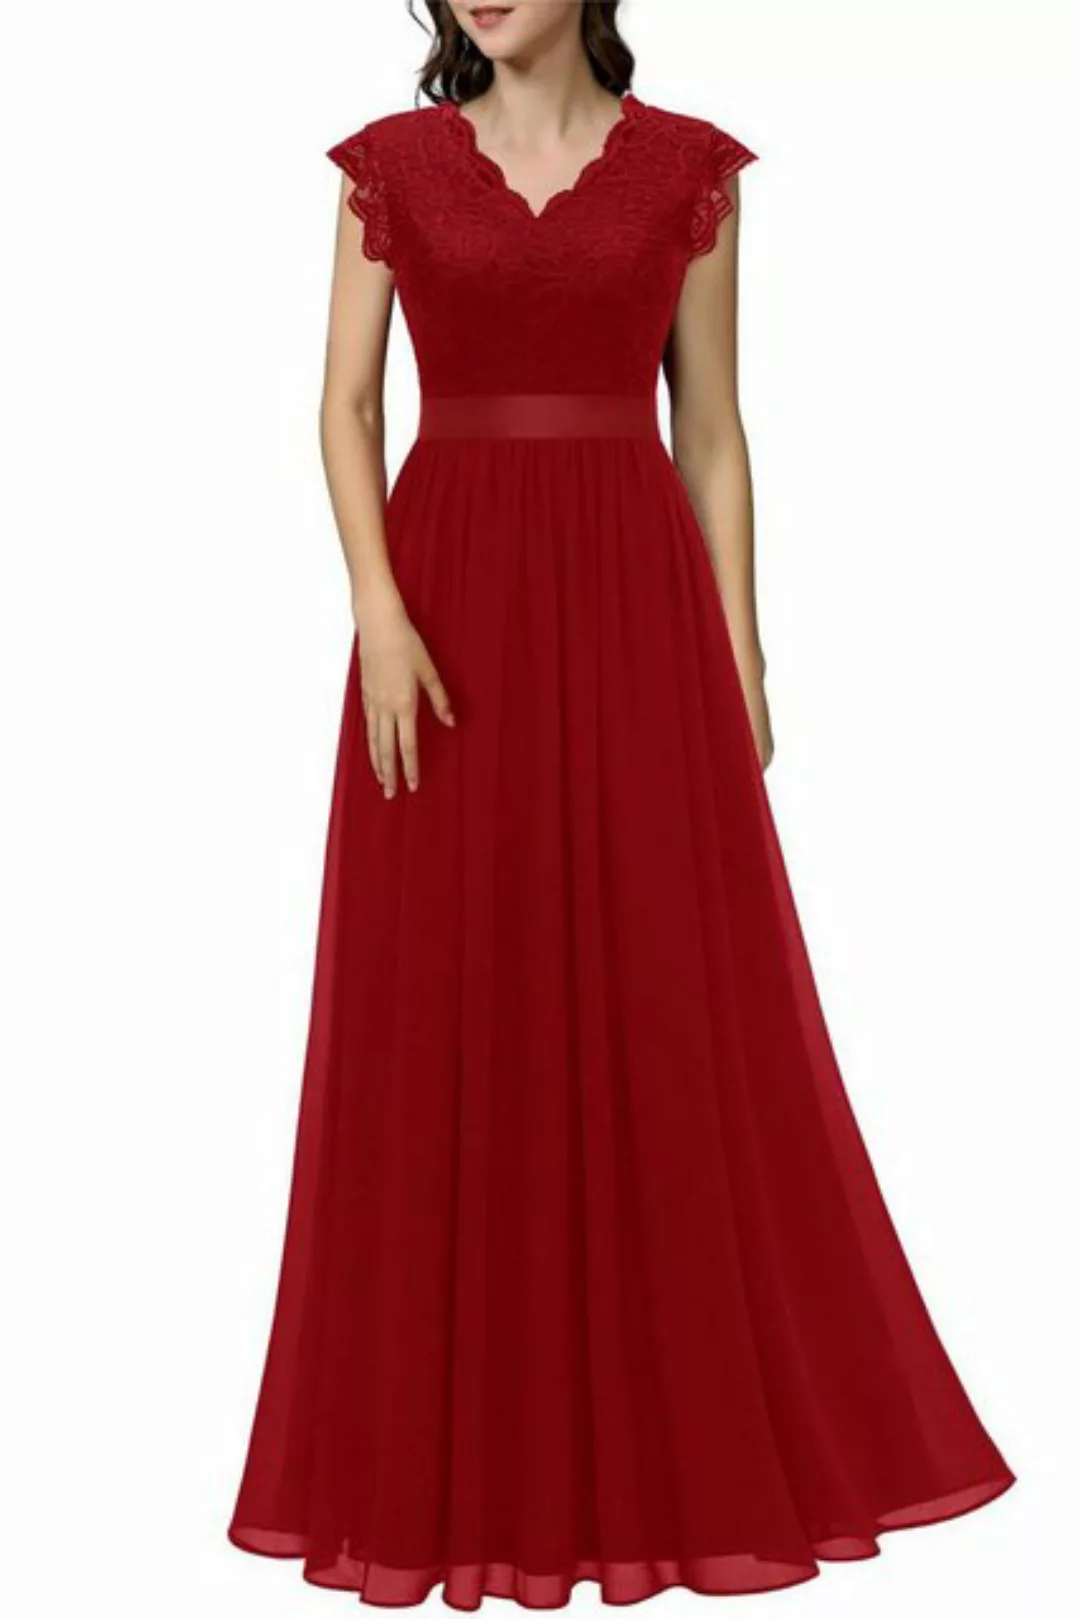 Orient Phoenix Abendkleid Damen V-Ausschnitt ärmellos Ballkleid Maxi-Partyk günstig online kaufen